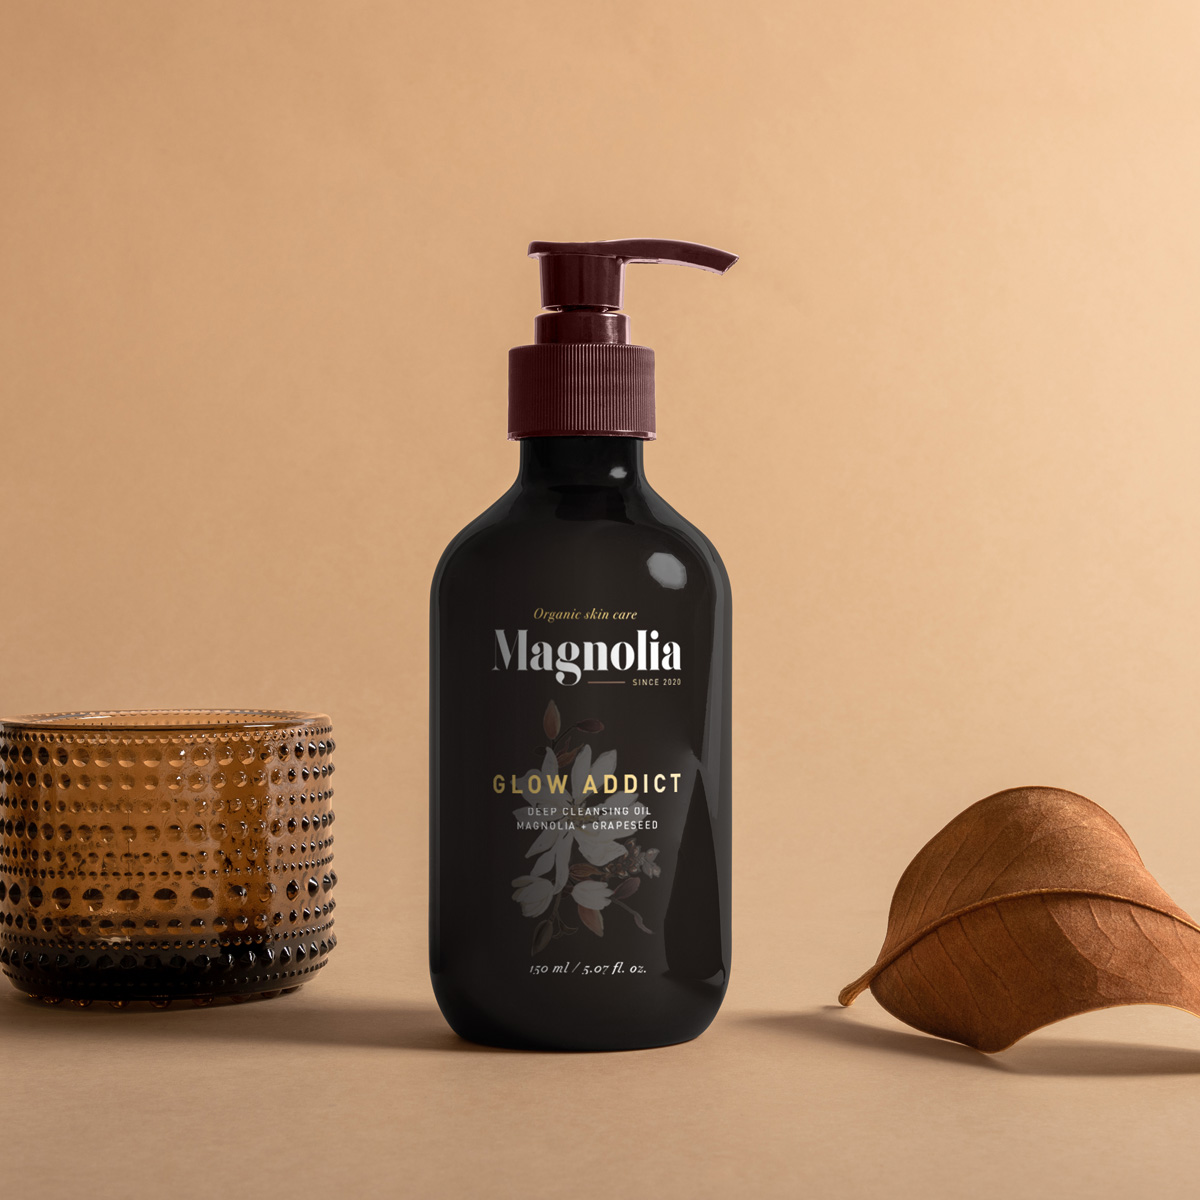 Magnolia Organic Skincare